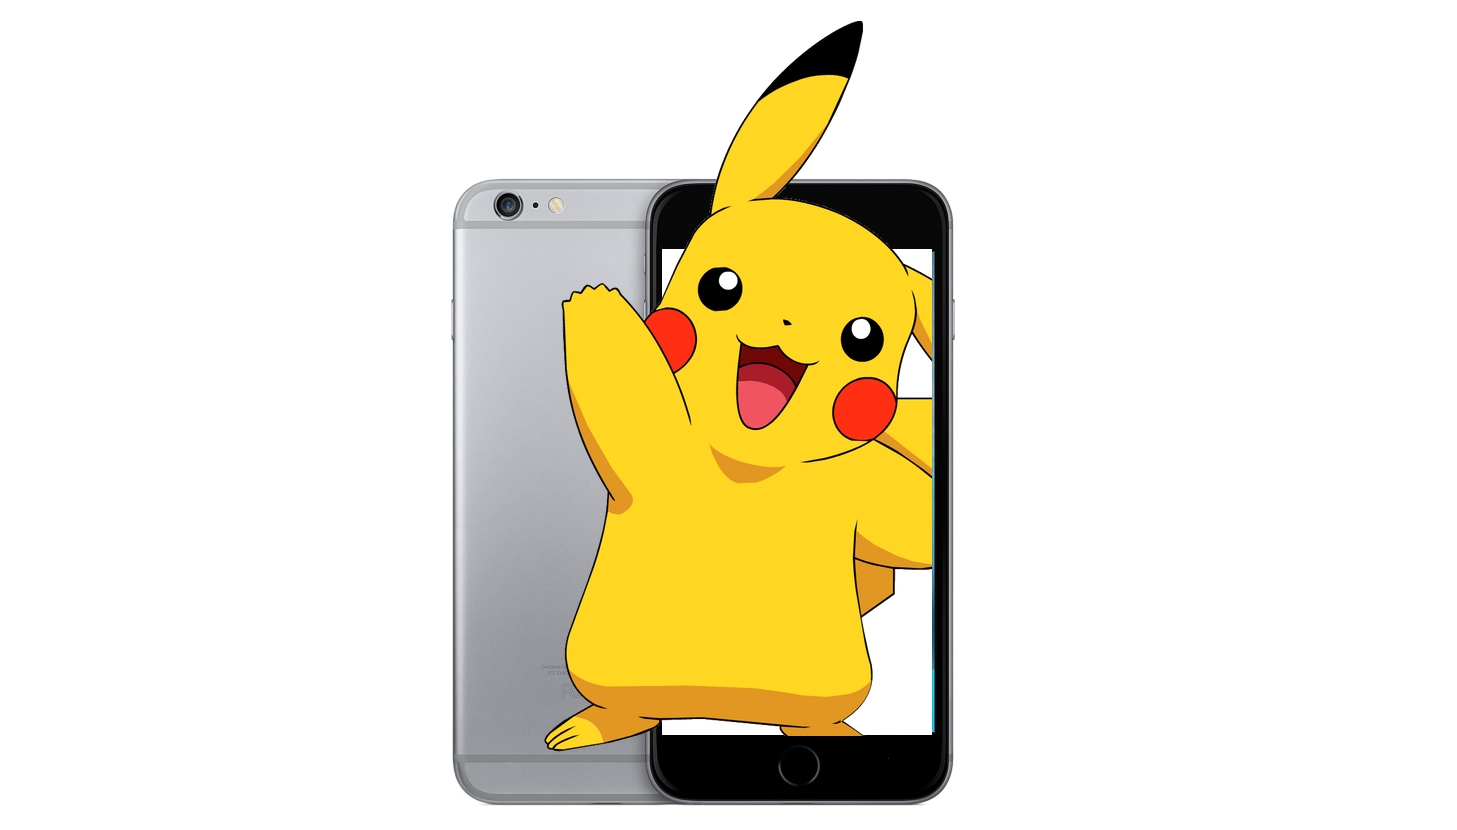 So laden Sie Pokémon Go auf ein britisches iPhone herunter: Holen Sie sich JETZT Pikachu auf iOS